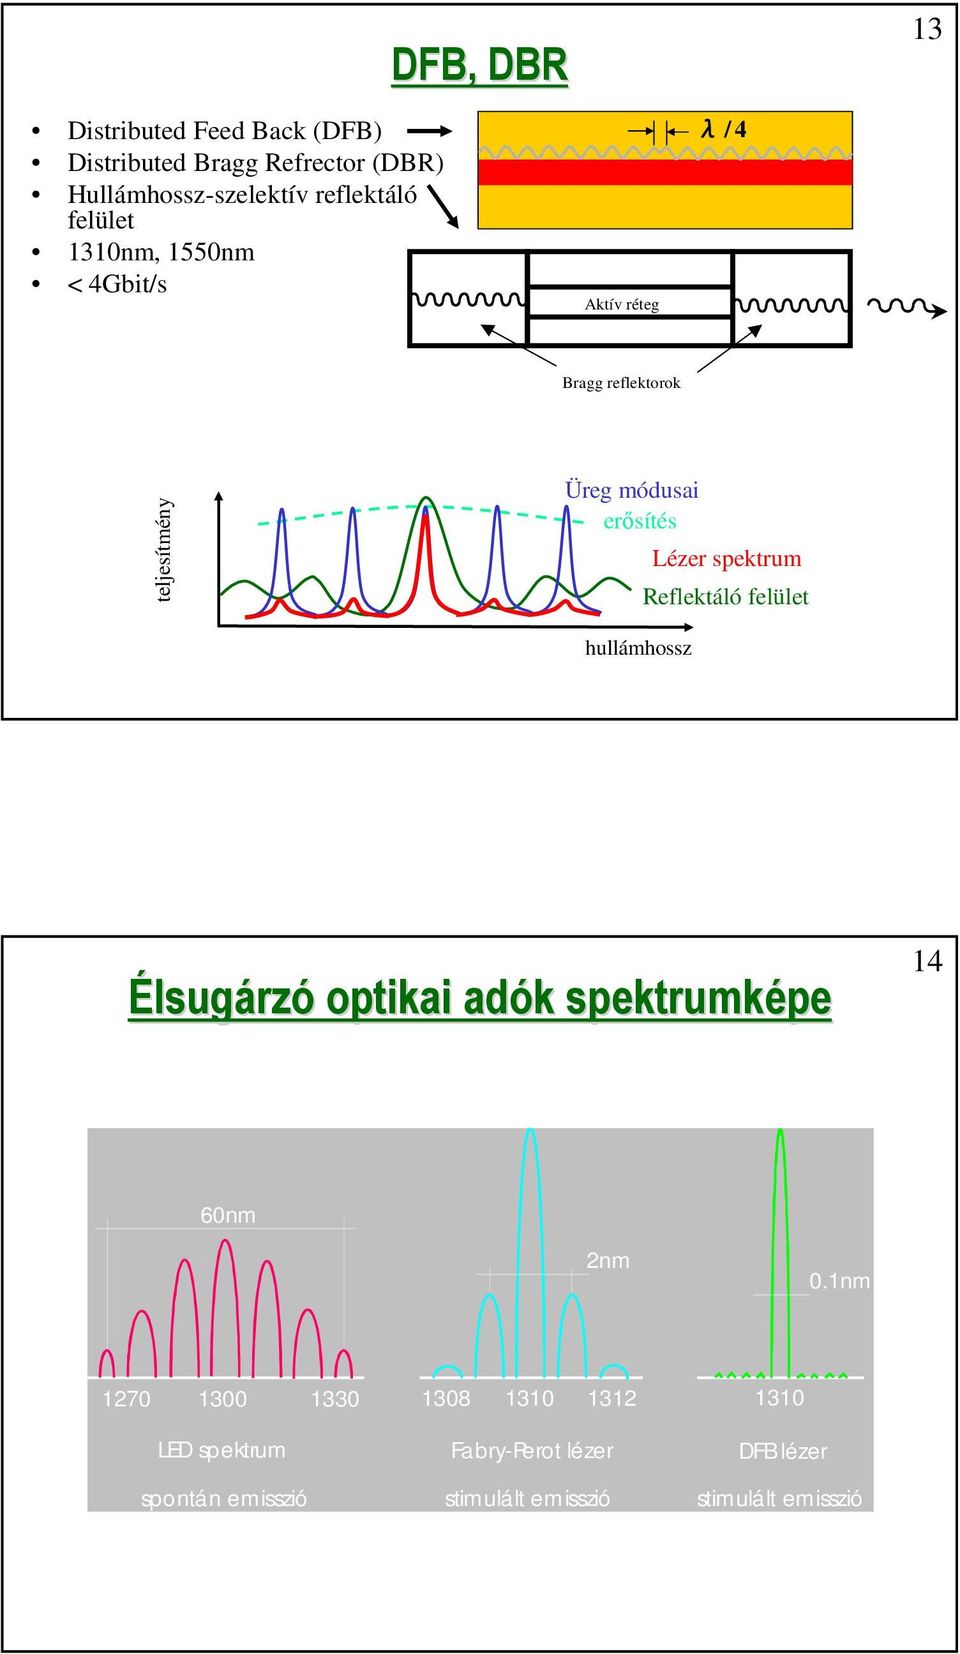 spektrum Reflektáló felület hullámhossz Élsugárzó optikai adók k spektrumképe 14 60nm 2nm 0.